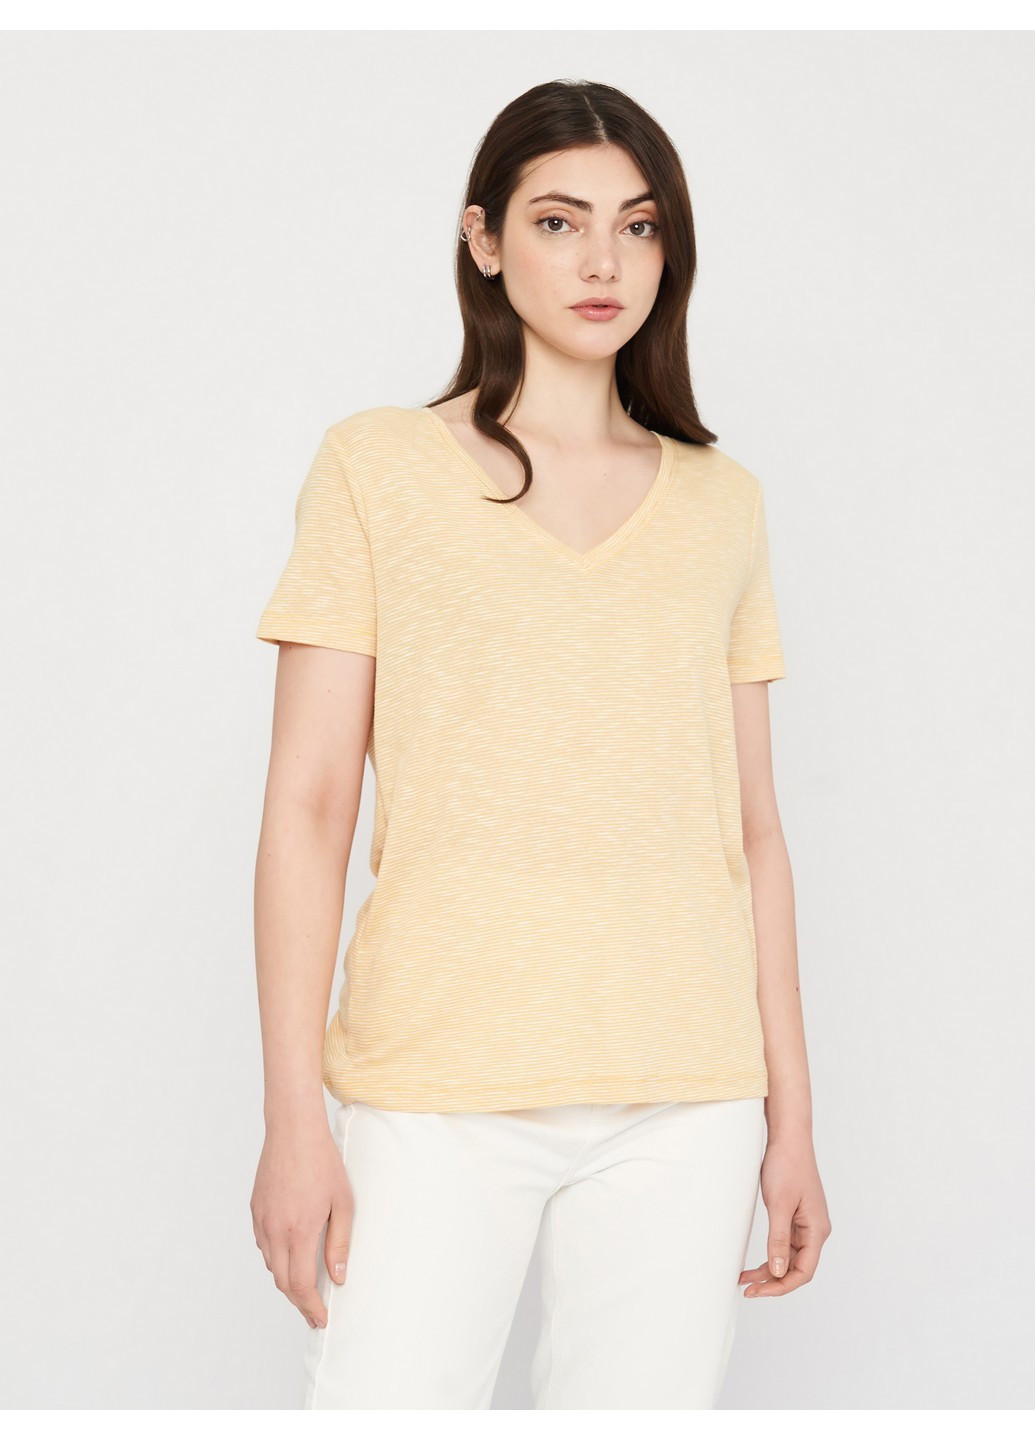 Жовта літня футболка C&A